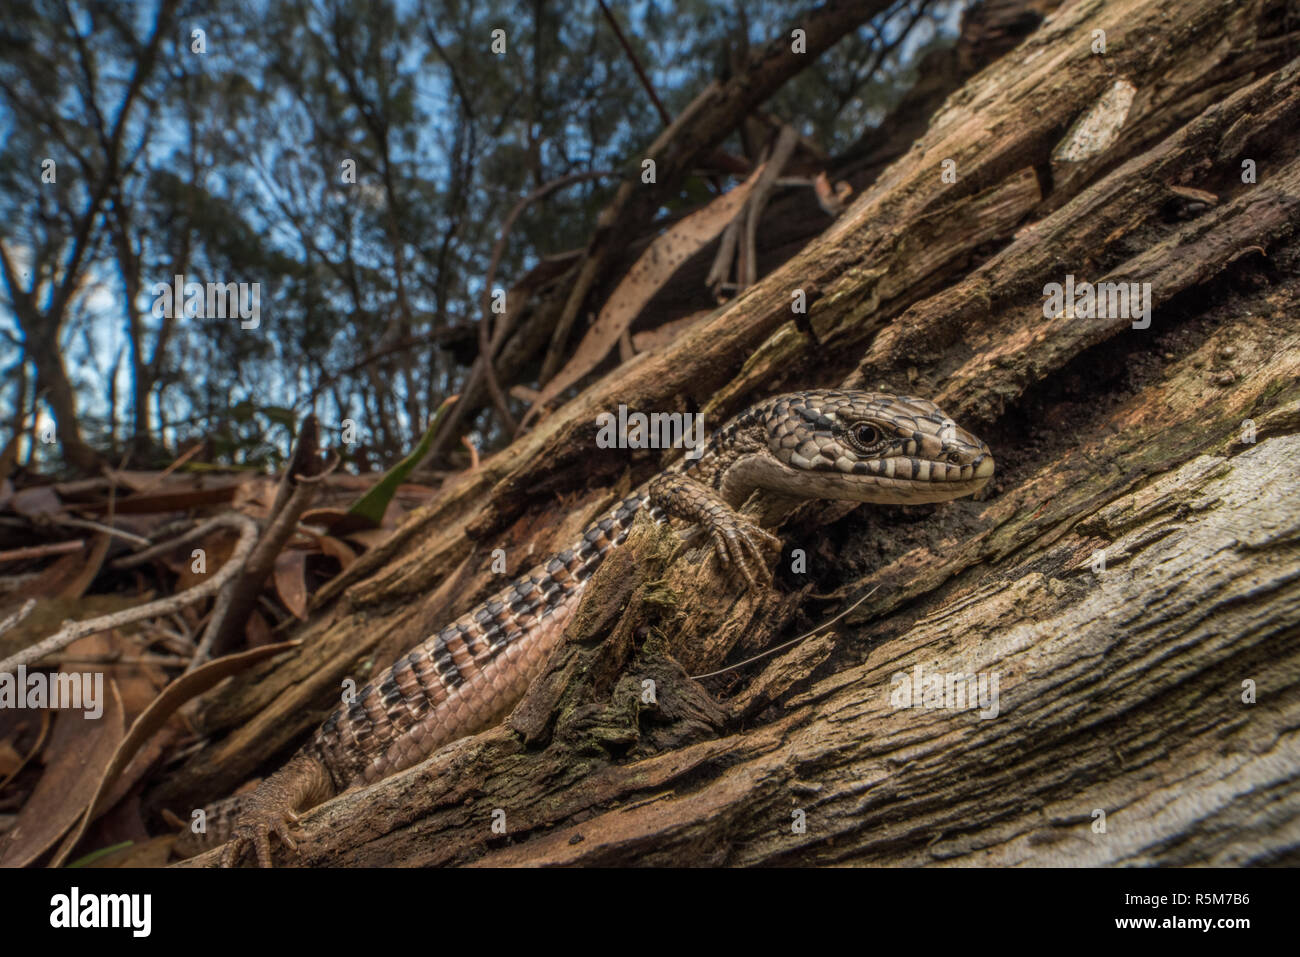 San Francisco Alligator Lizard (Elgaria coerulea coerulea), eine Unterart des Nördlichen krokodil Echse, die endemisch ist in der Bay Area in Kalifornien. Stockfoto